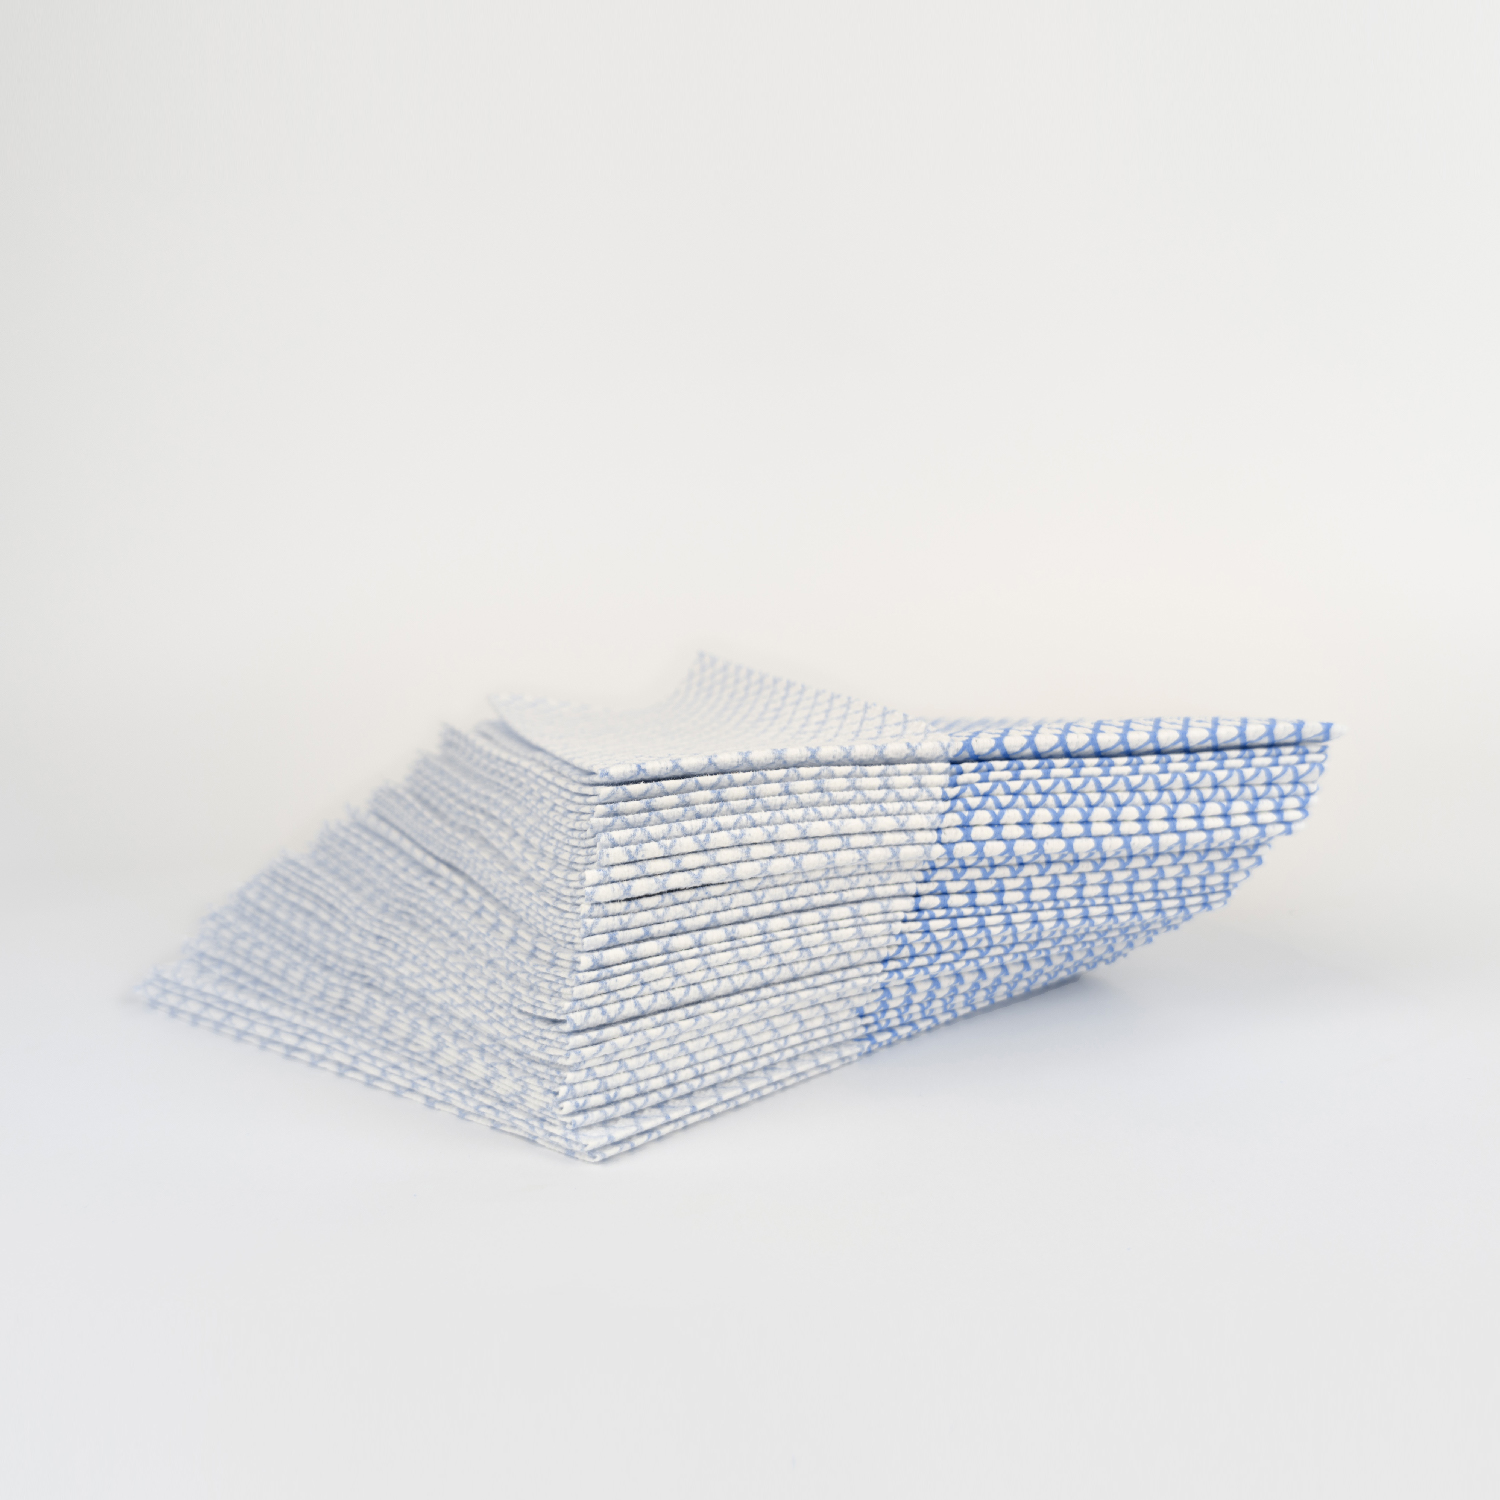 Салфетки нетканые протирочные многоразовые HACCPER 365, 39,5х34,5 см, синие, 25шт/упак